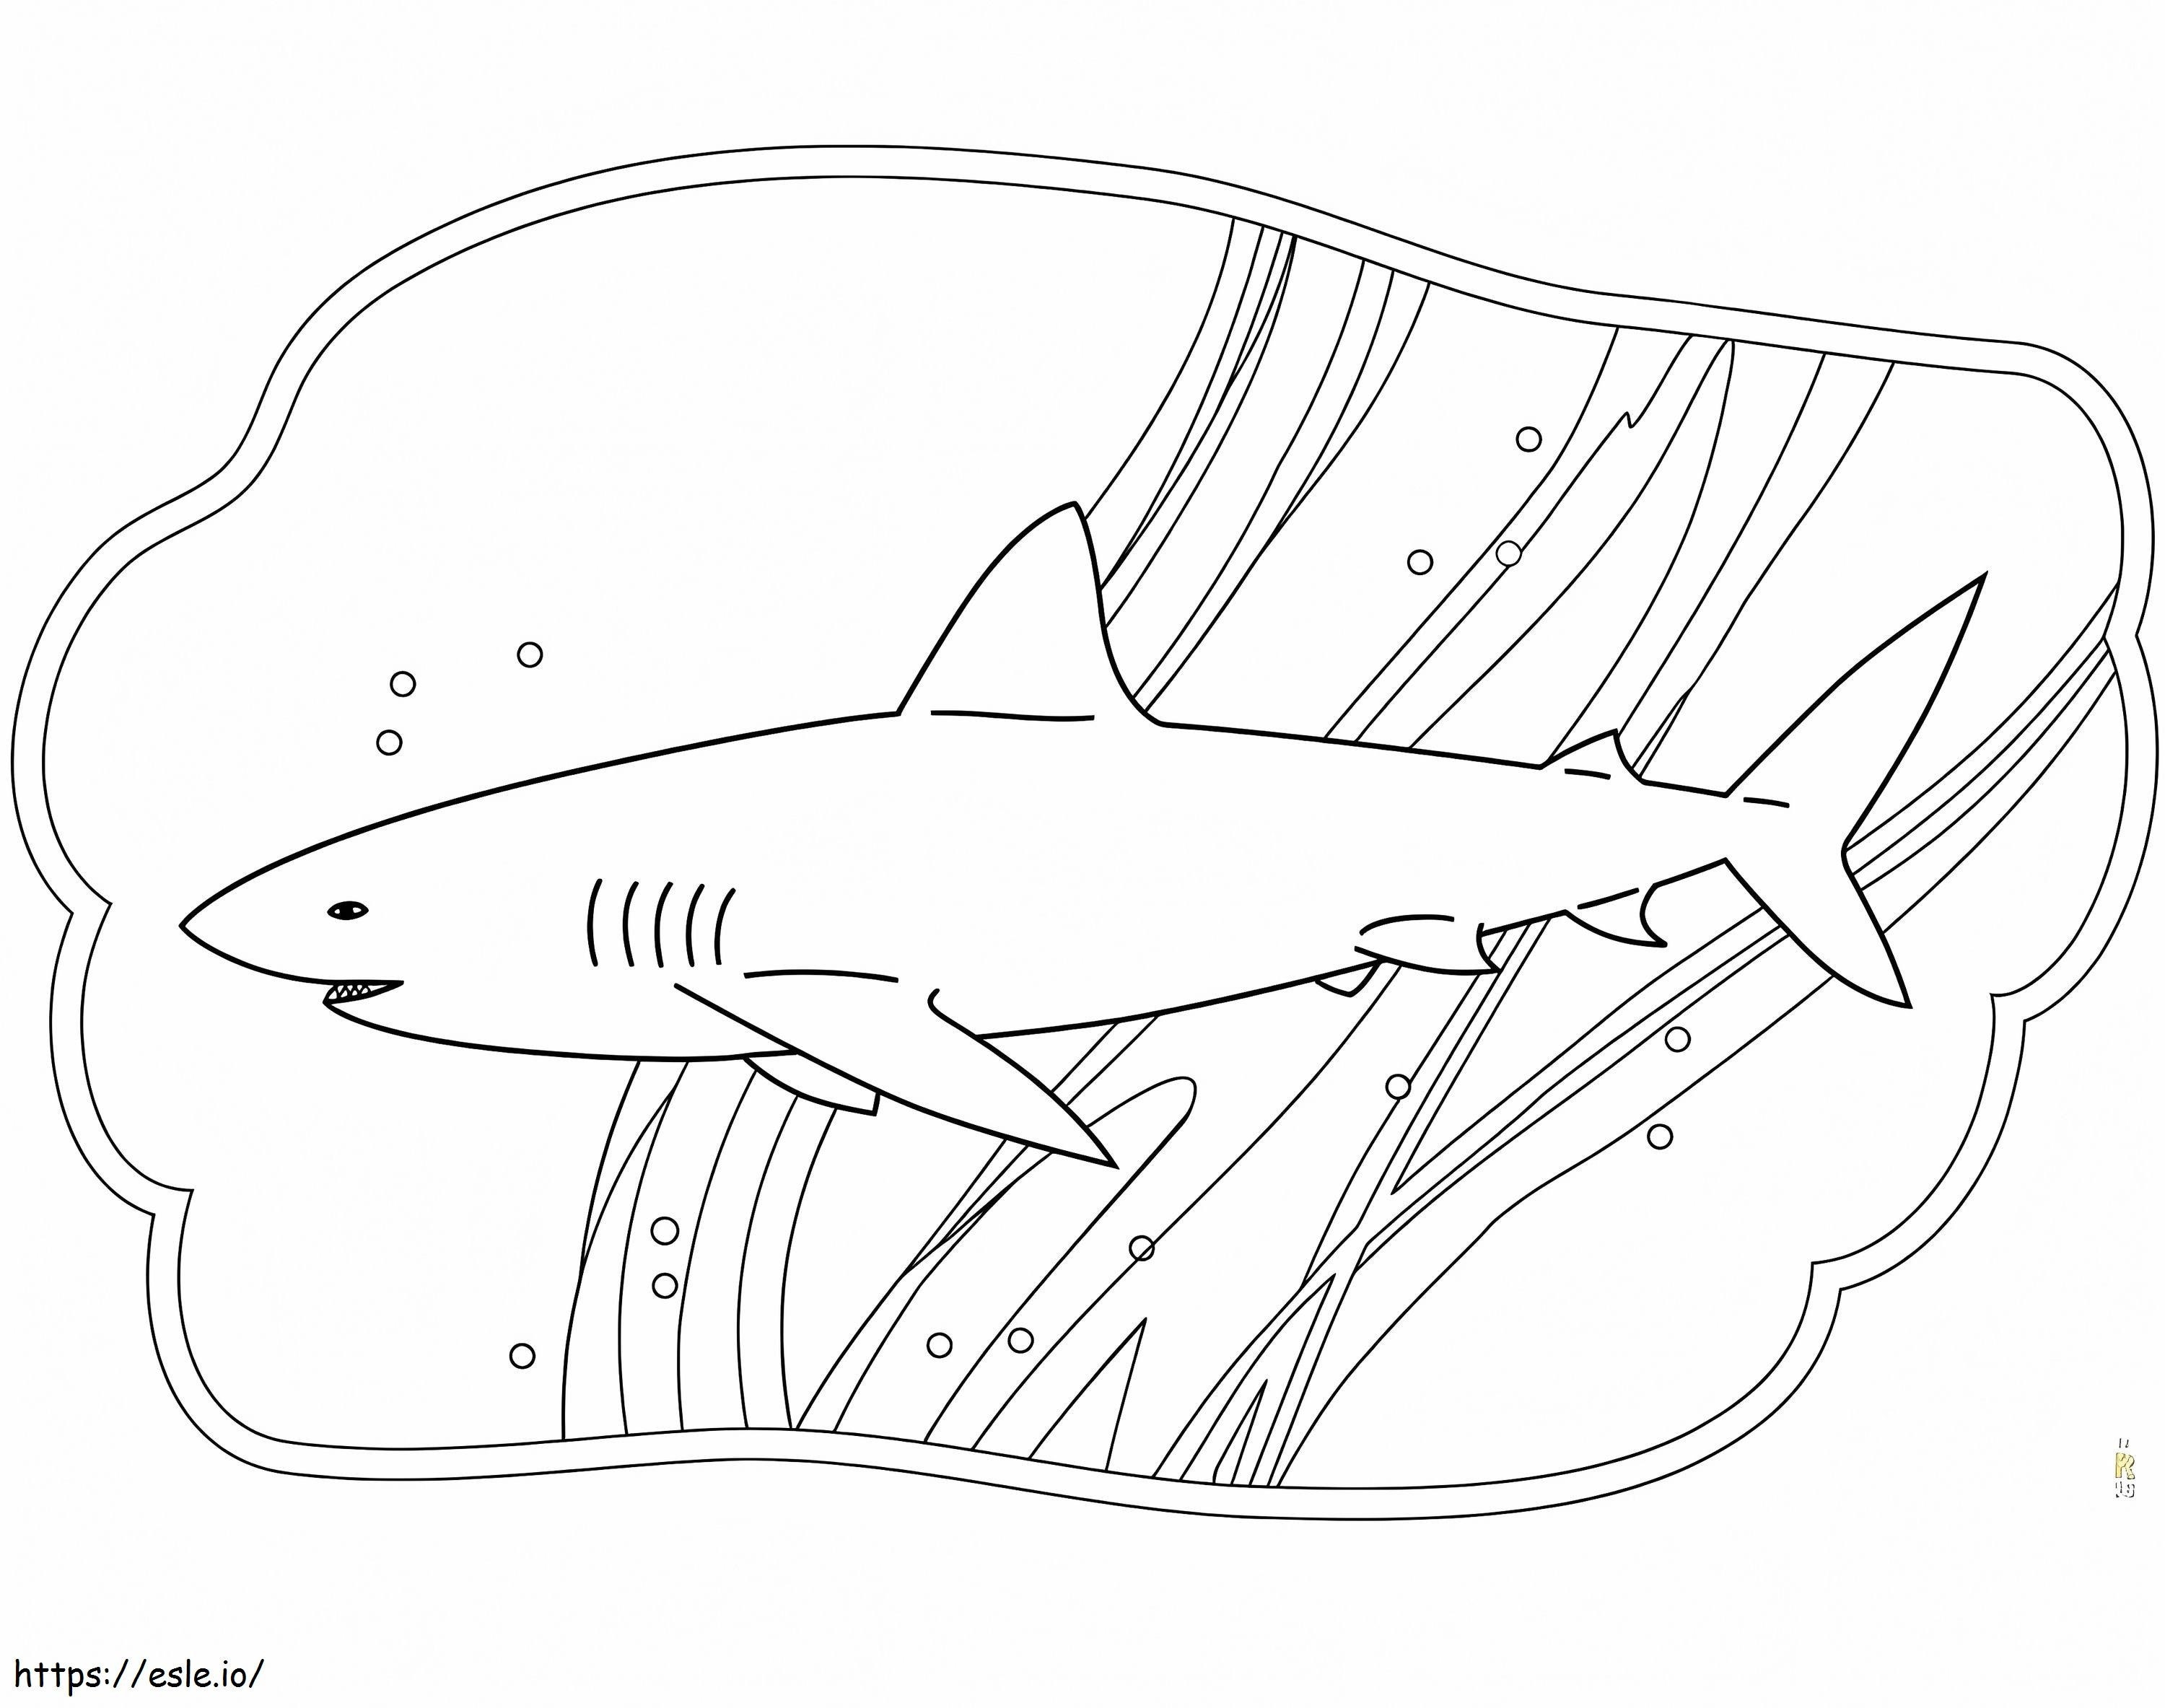 Ücretsiz Köpekbalığı boyama